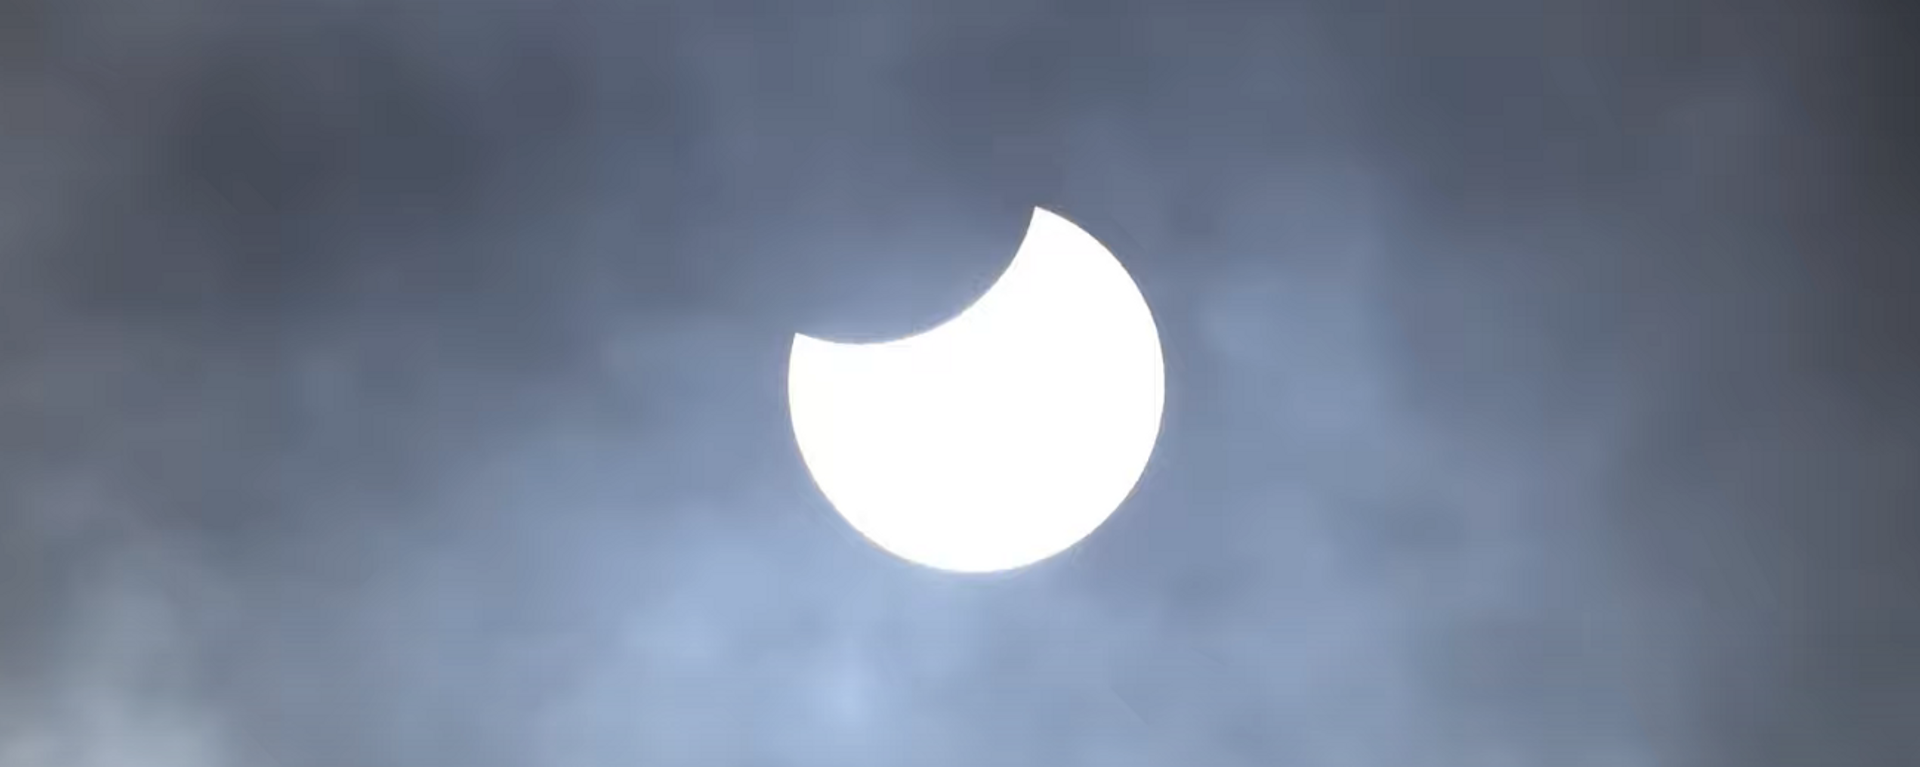 Редкое кольцеобразное затмение Солнца сняли на видео - Sputnik Lietuva, 1920, 10.06.2021